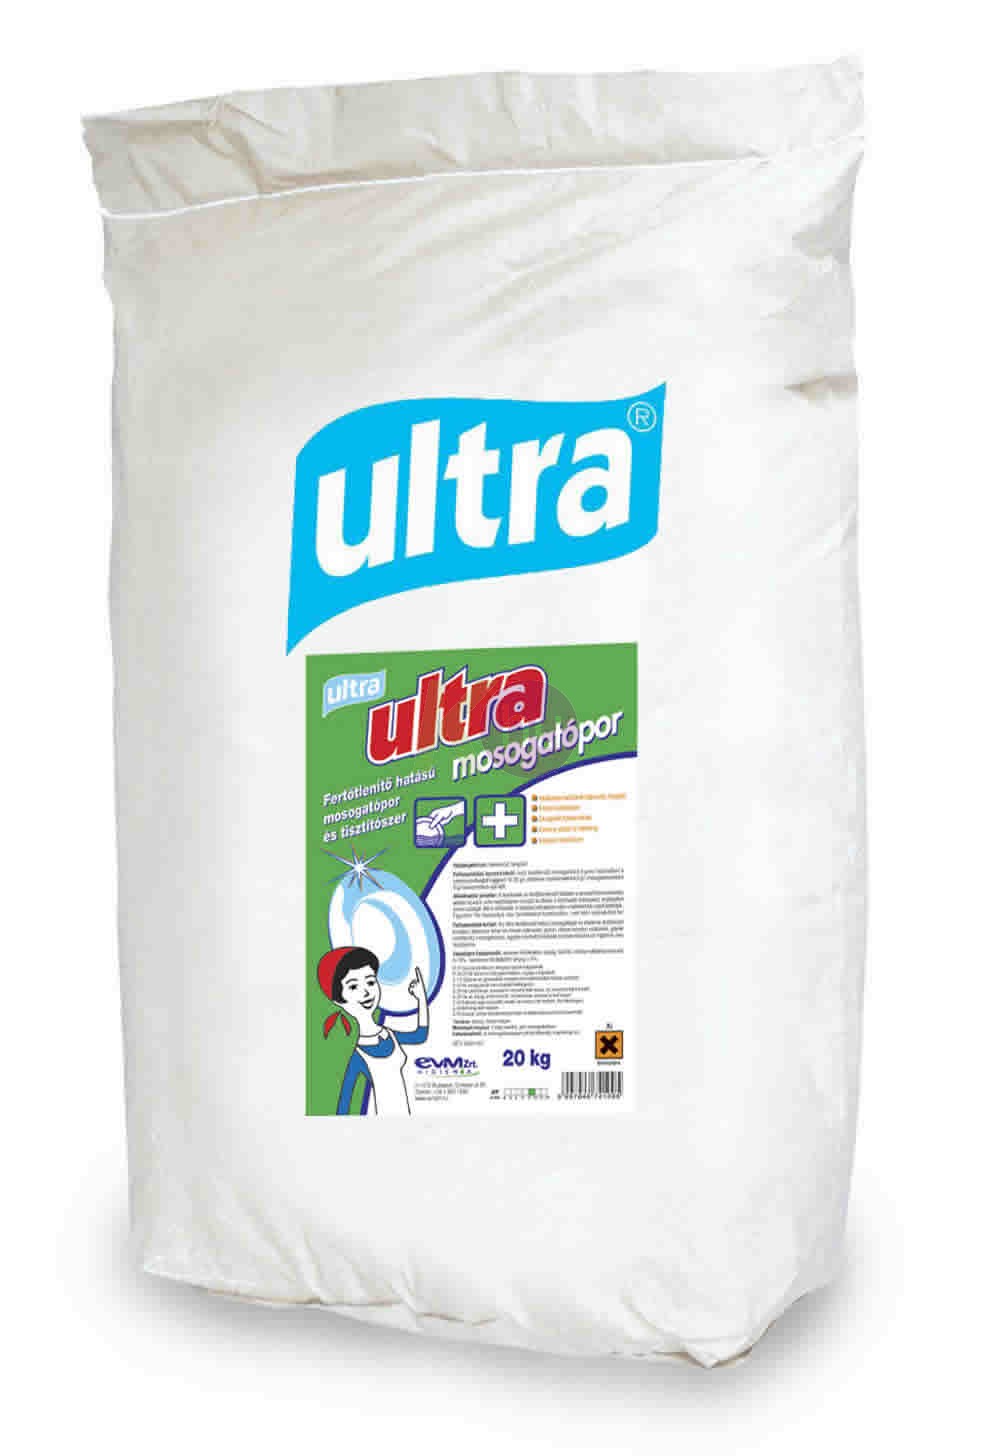 Ultra mosogatópor 20kg fertőtlenítő 34101901